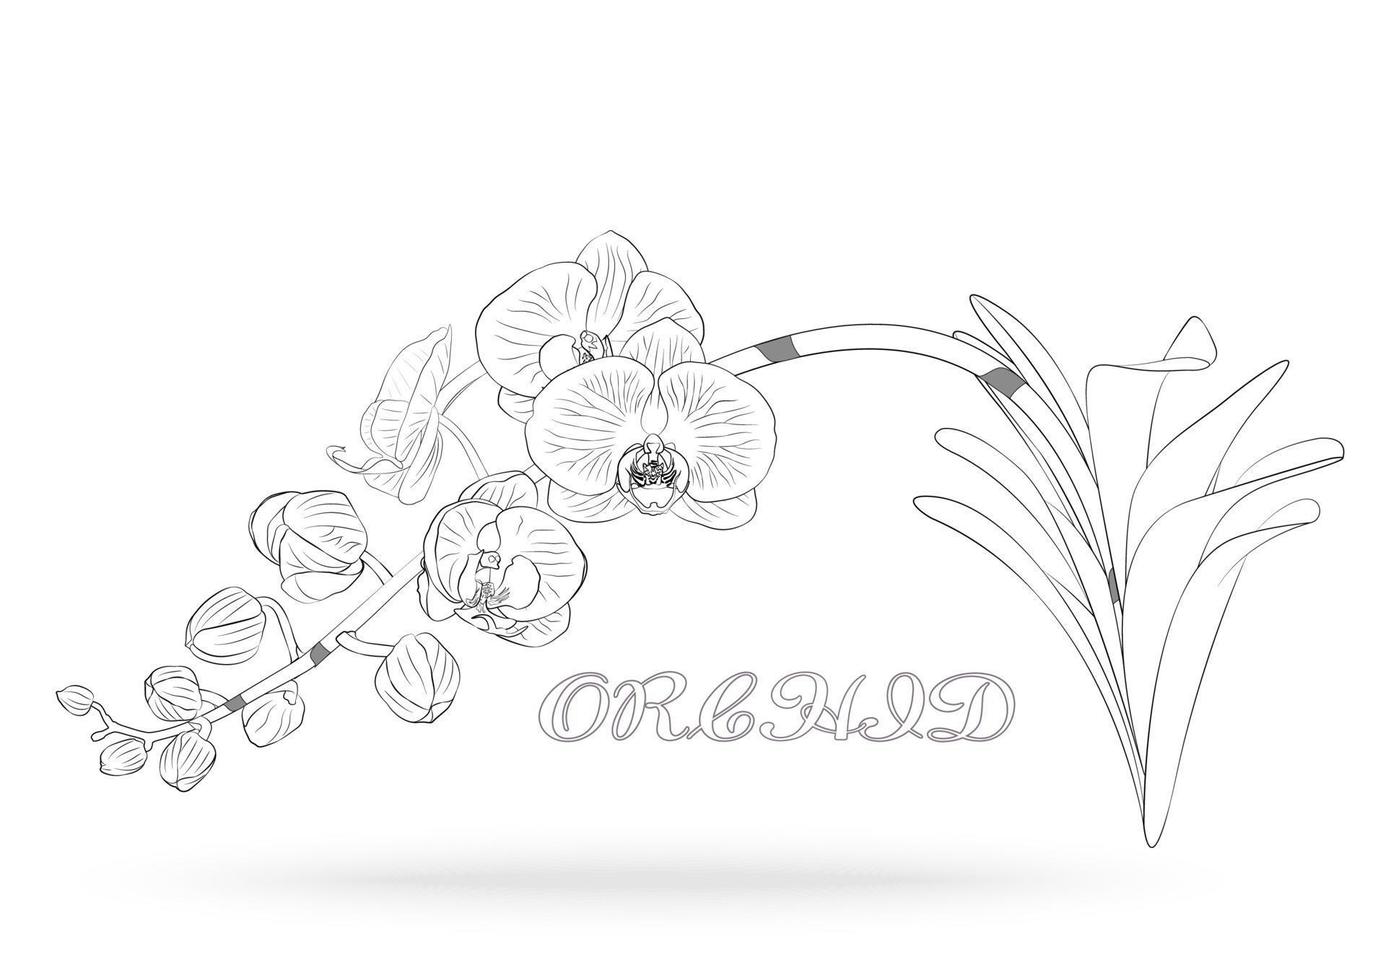 Orchideenblütenvektor vektor